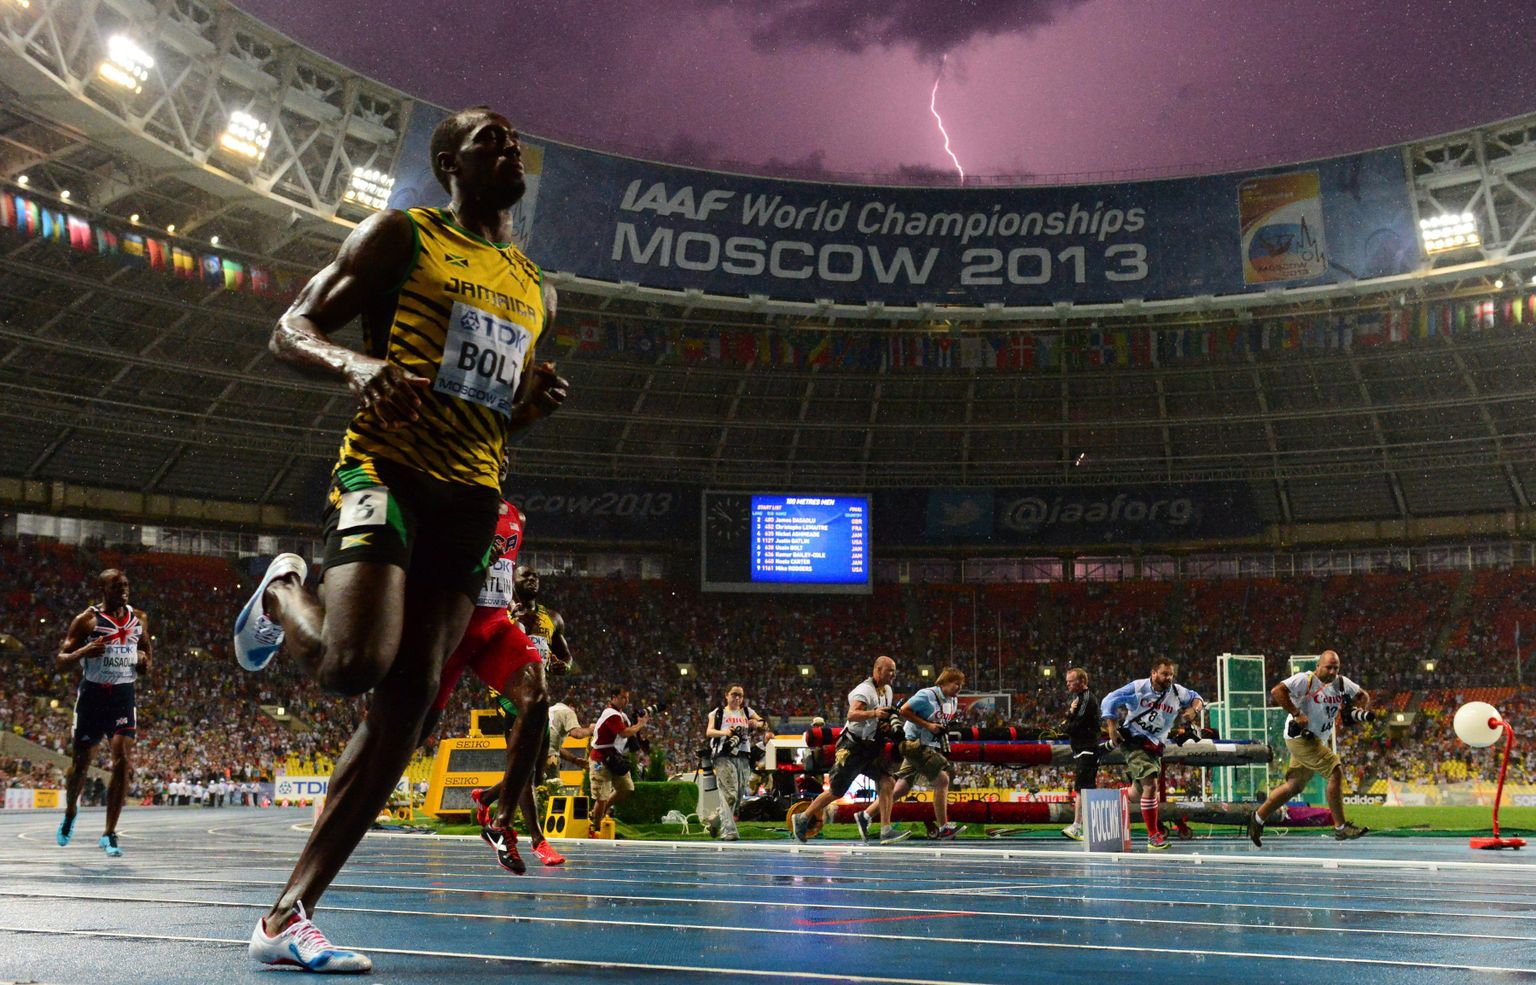 Usain Bolt on just võitnud oma kuuenda MM-tiitli ja selle auks sähvib Moskvas Lužniki staadioni kohal ka uhke välgunool.